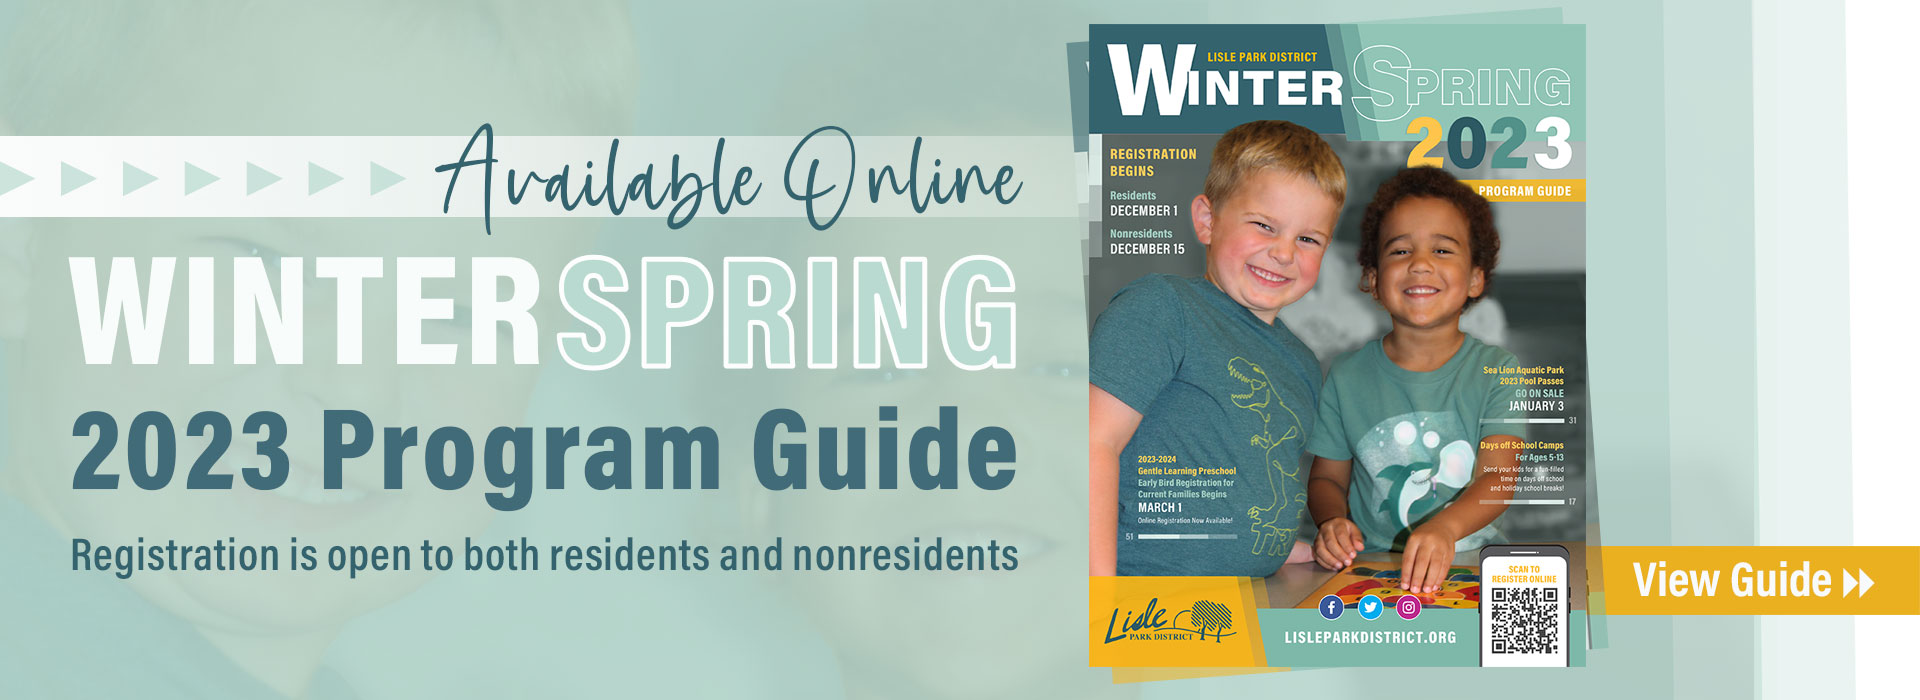 Winter-Spring 2023 Program Guide